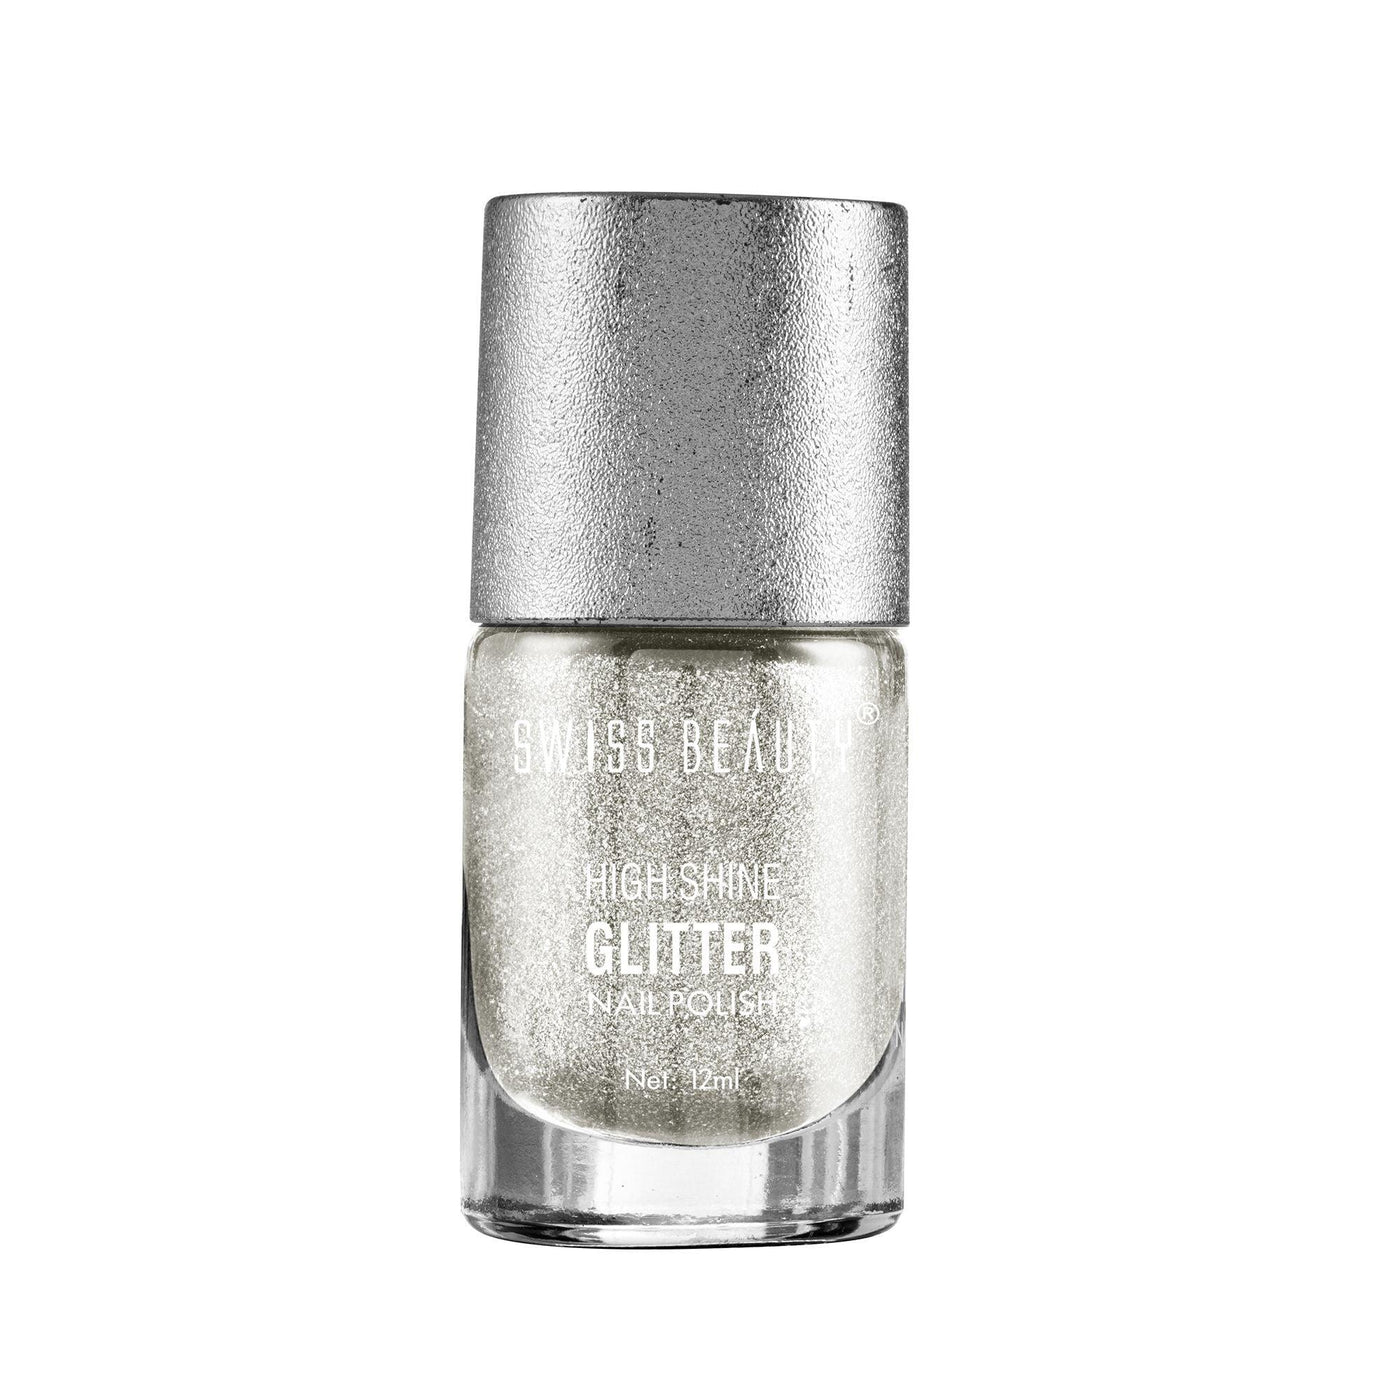 Beautybigbang 1pcs Shell Glimmer Nail Polish Shiny Glitter Nail